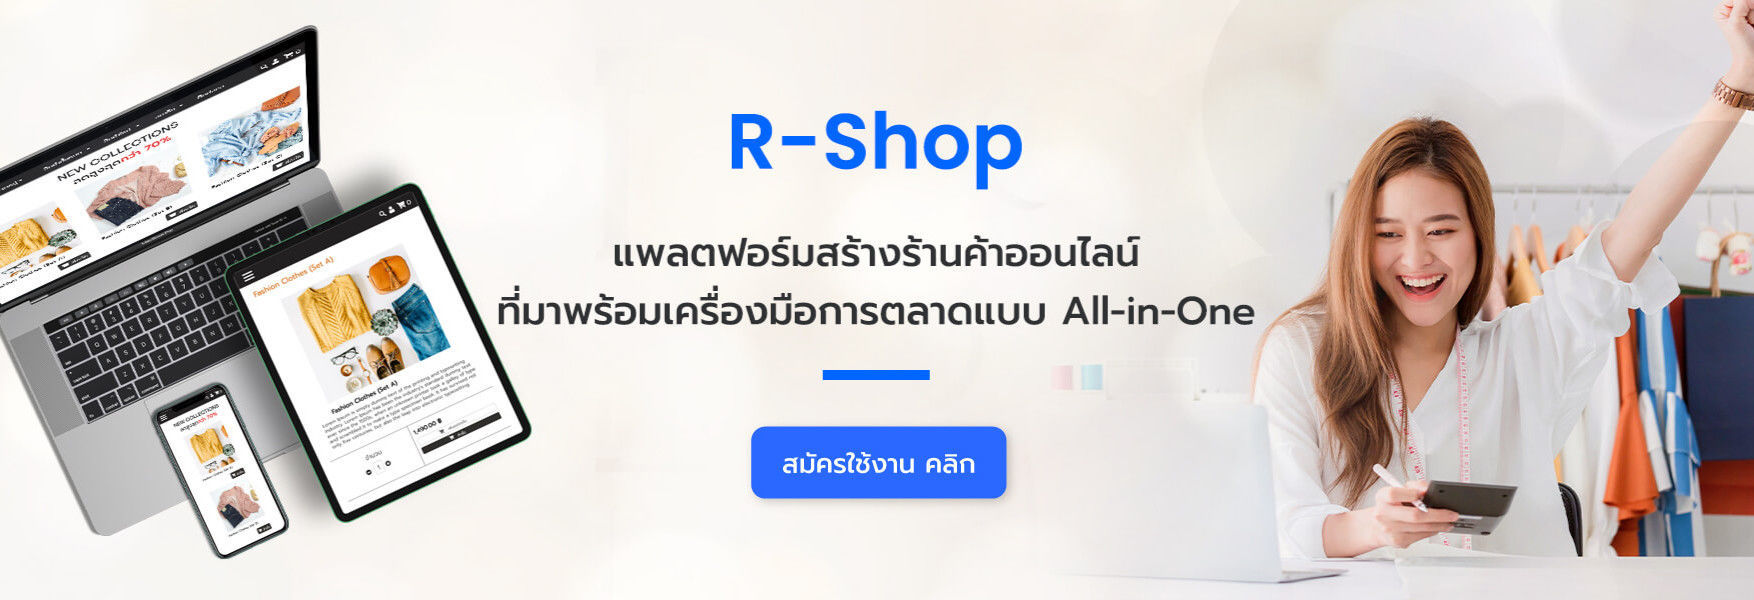 R-Shop สร้างเว็บขายสินค้าออนไลน์ พร้อมเครื่องมือการตลาดครบครัน